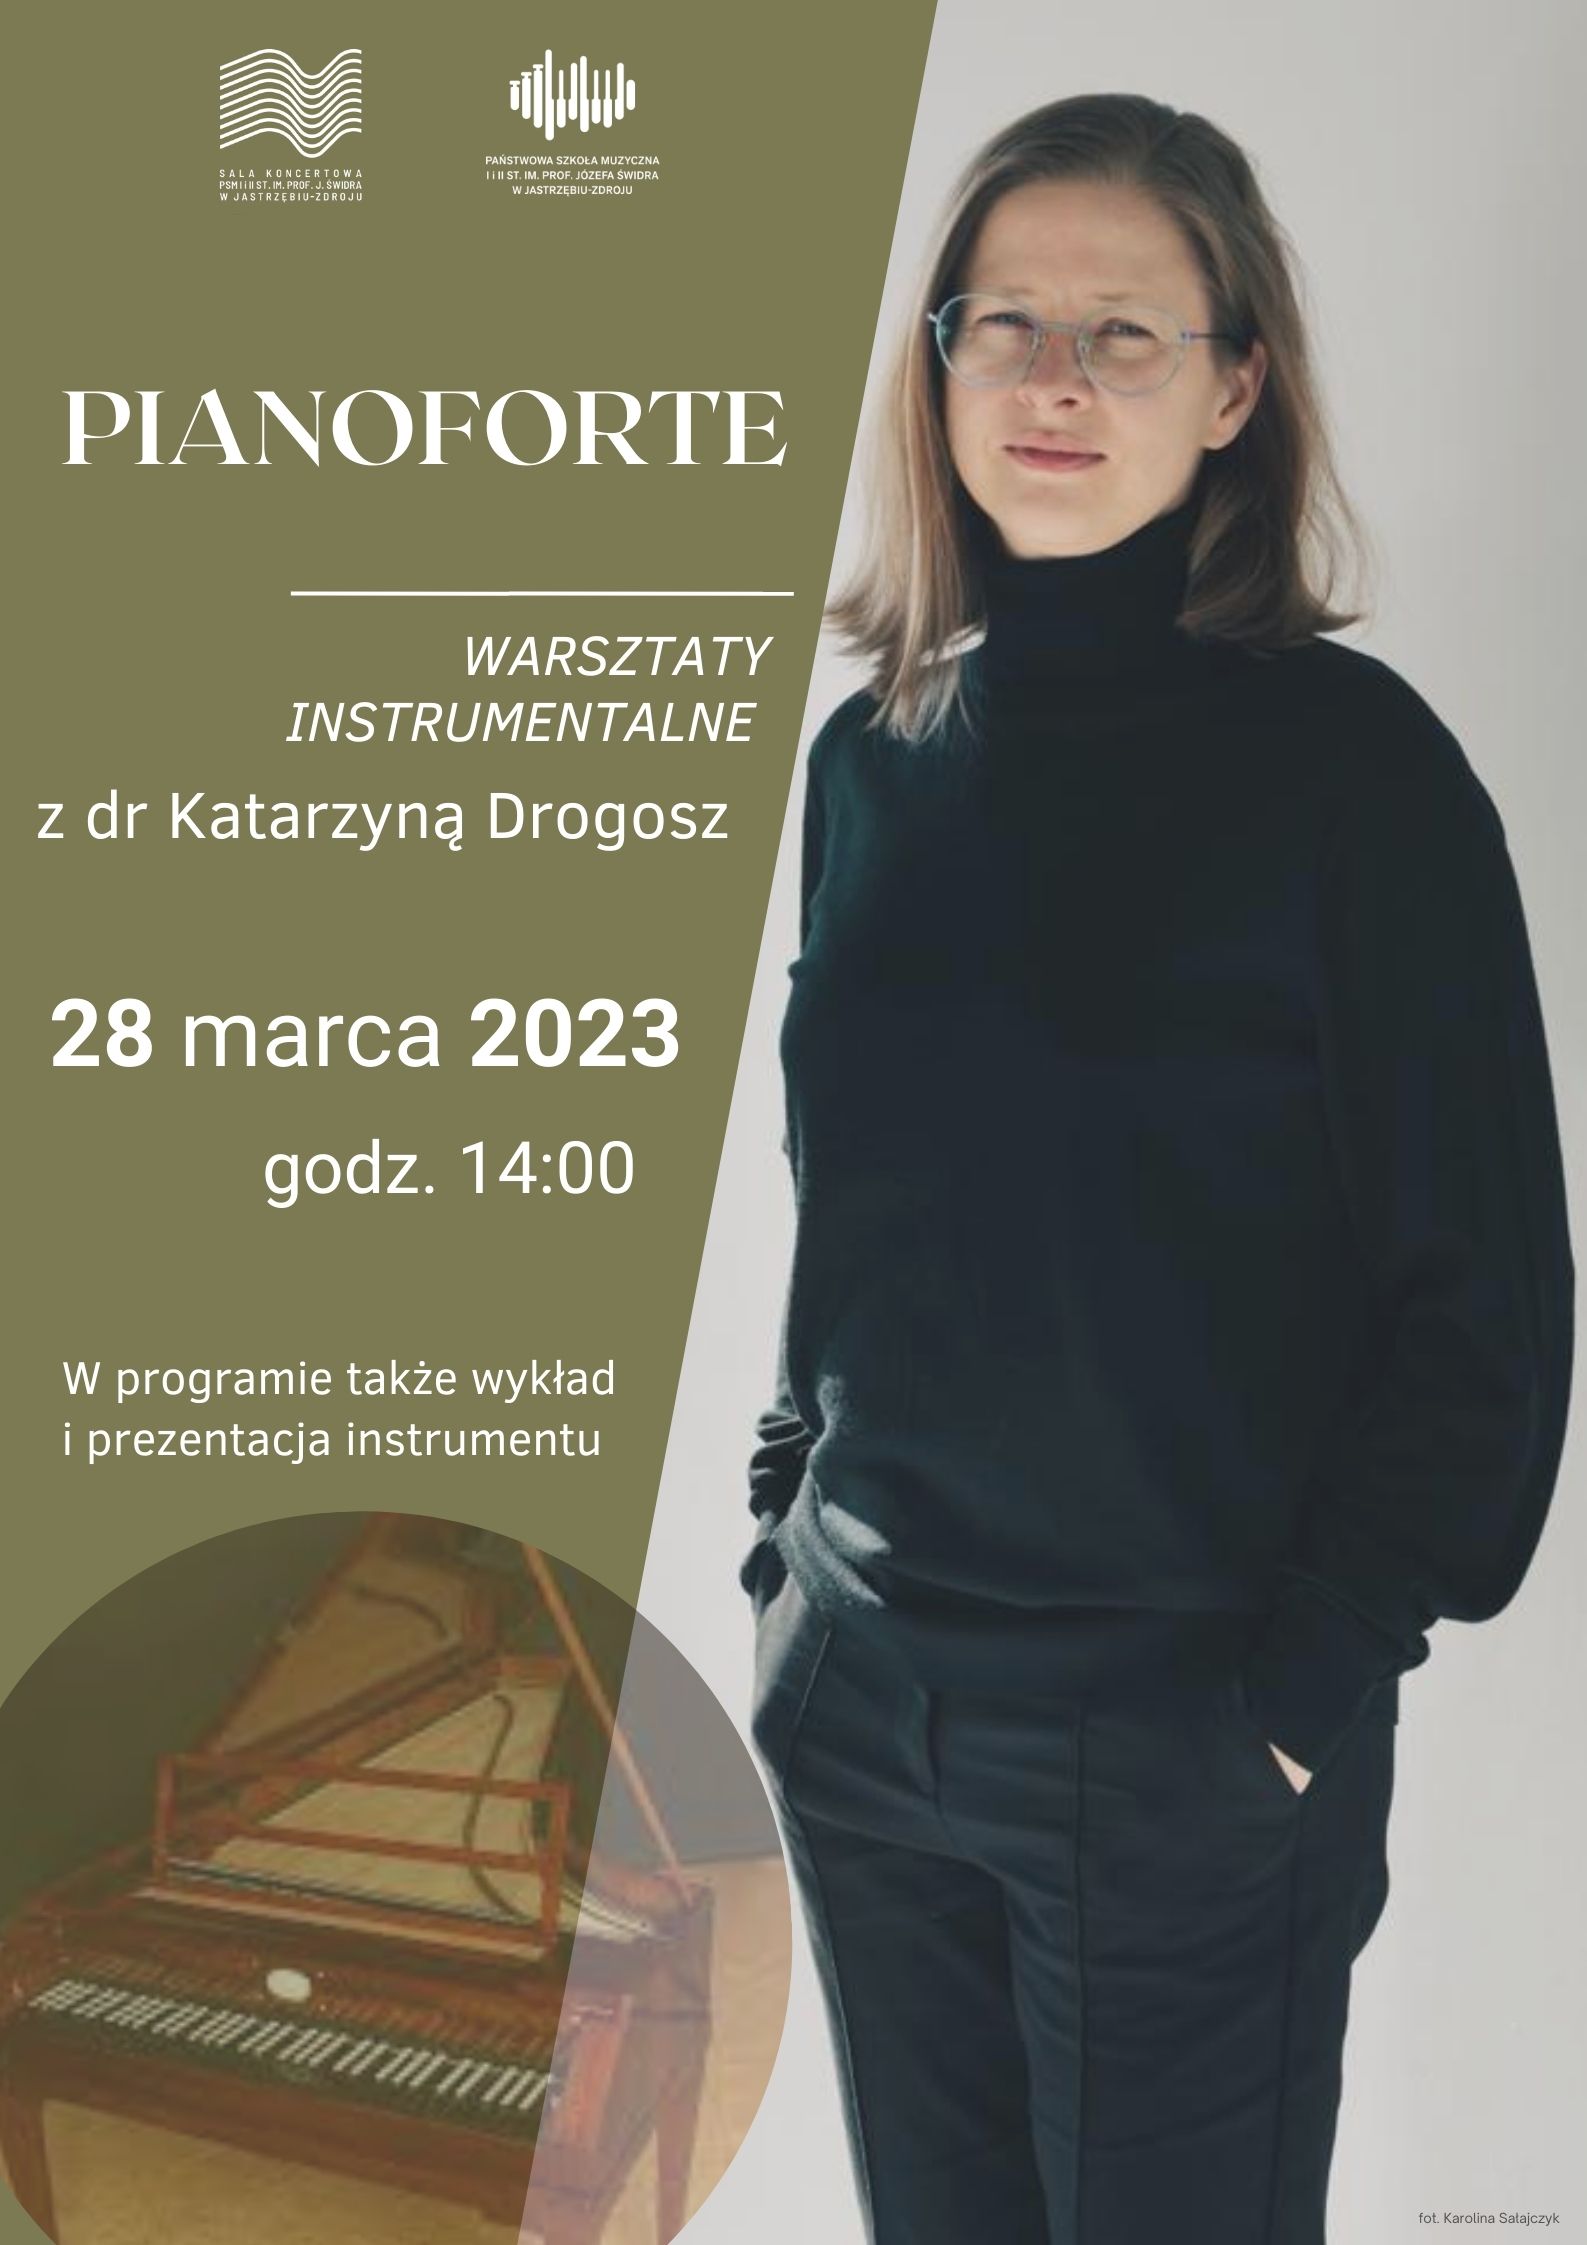 Plakat informacyjny o warsztatach z Katarzyną Drogosz, w dniu 28.03.2023 o godz. 14.00, Na plakacie artystka i fortepian